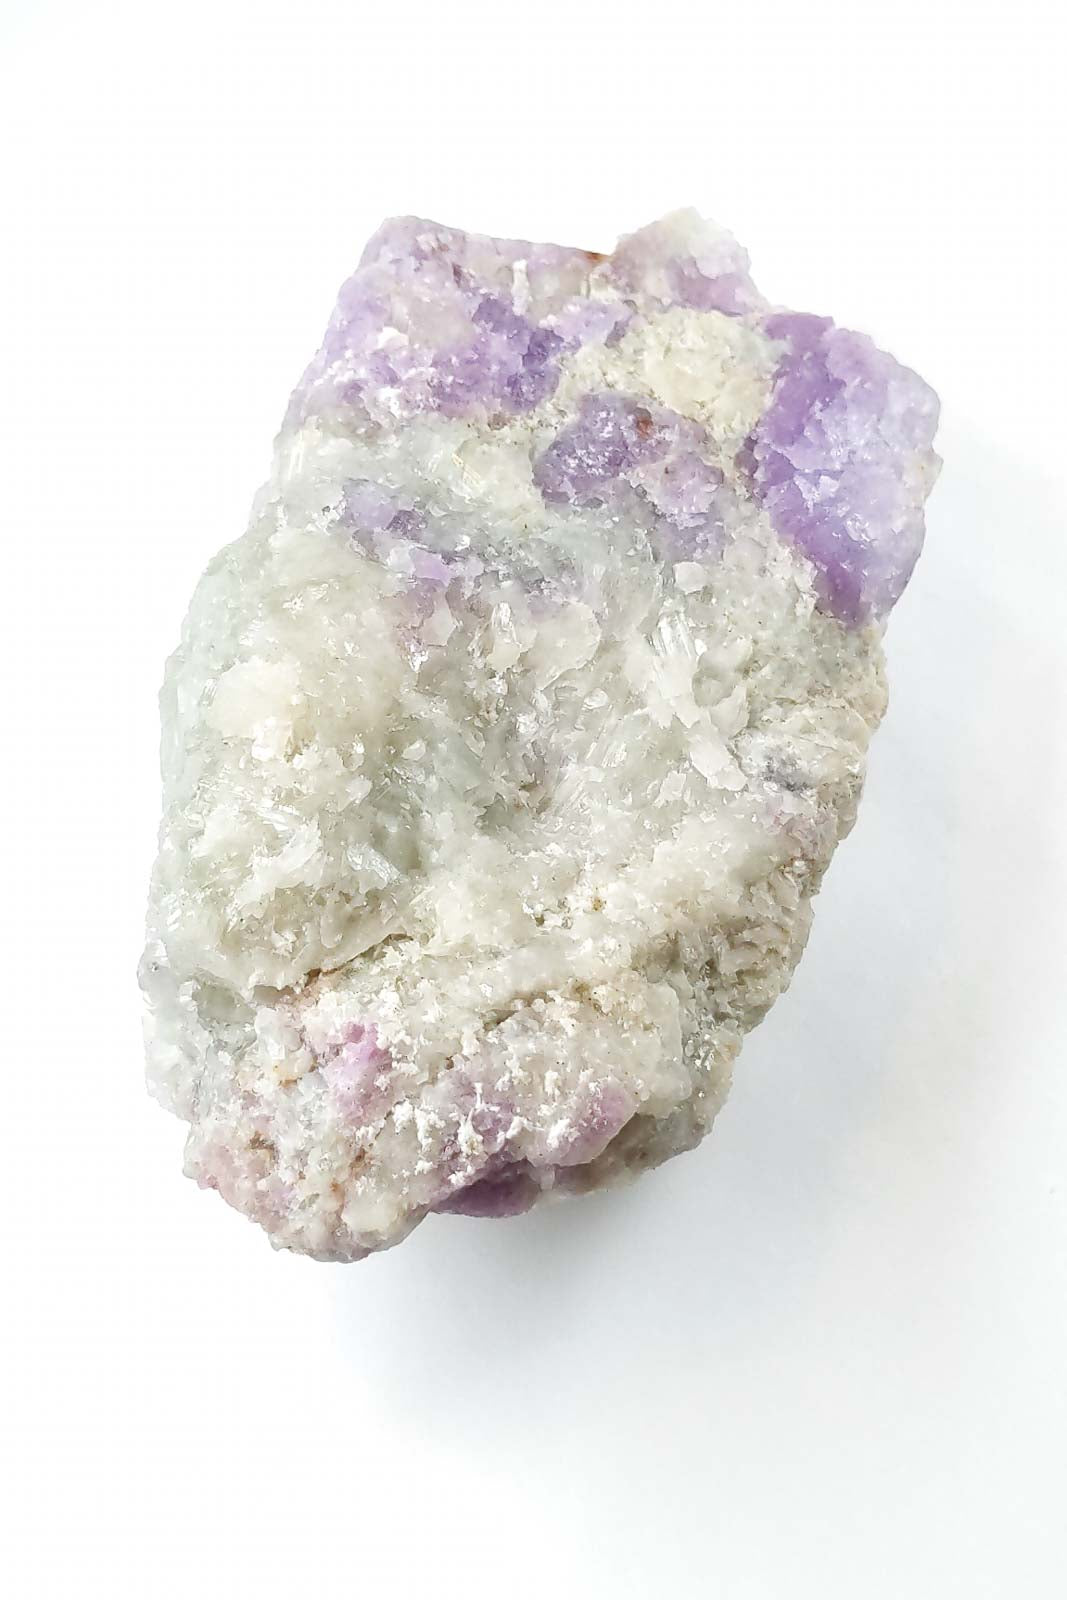 ハックマナイト クリスタル 原石 結晶